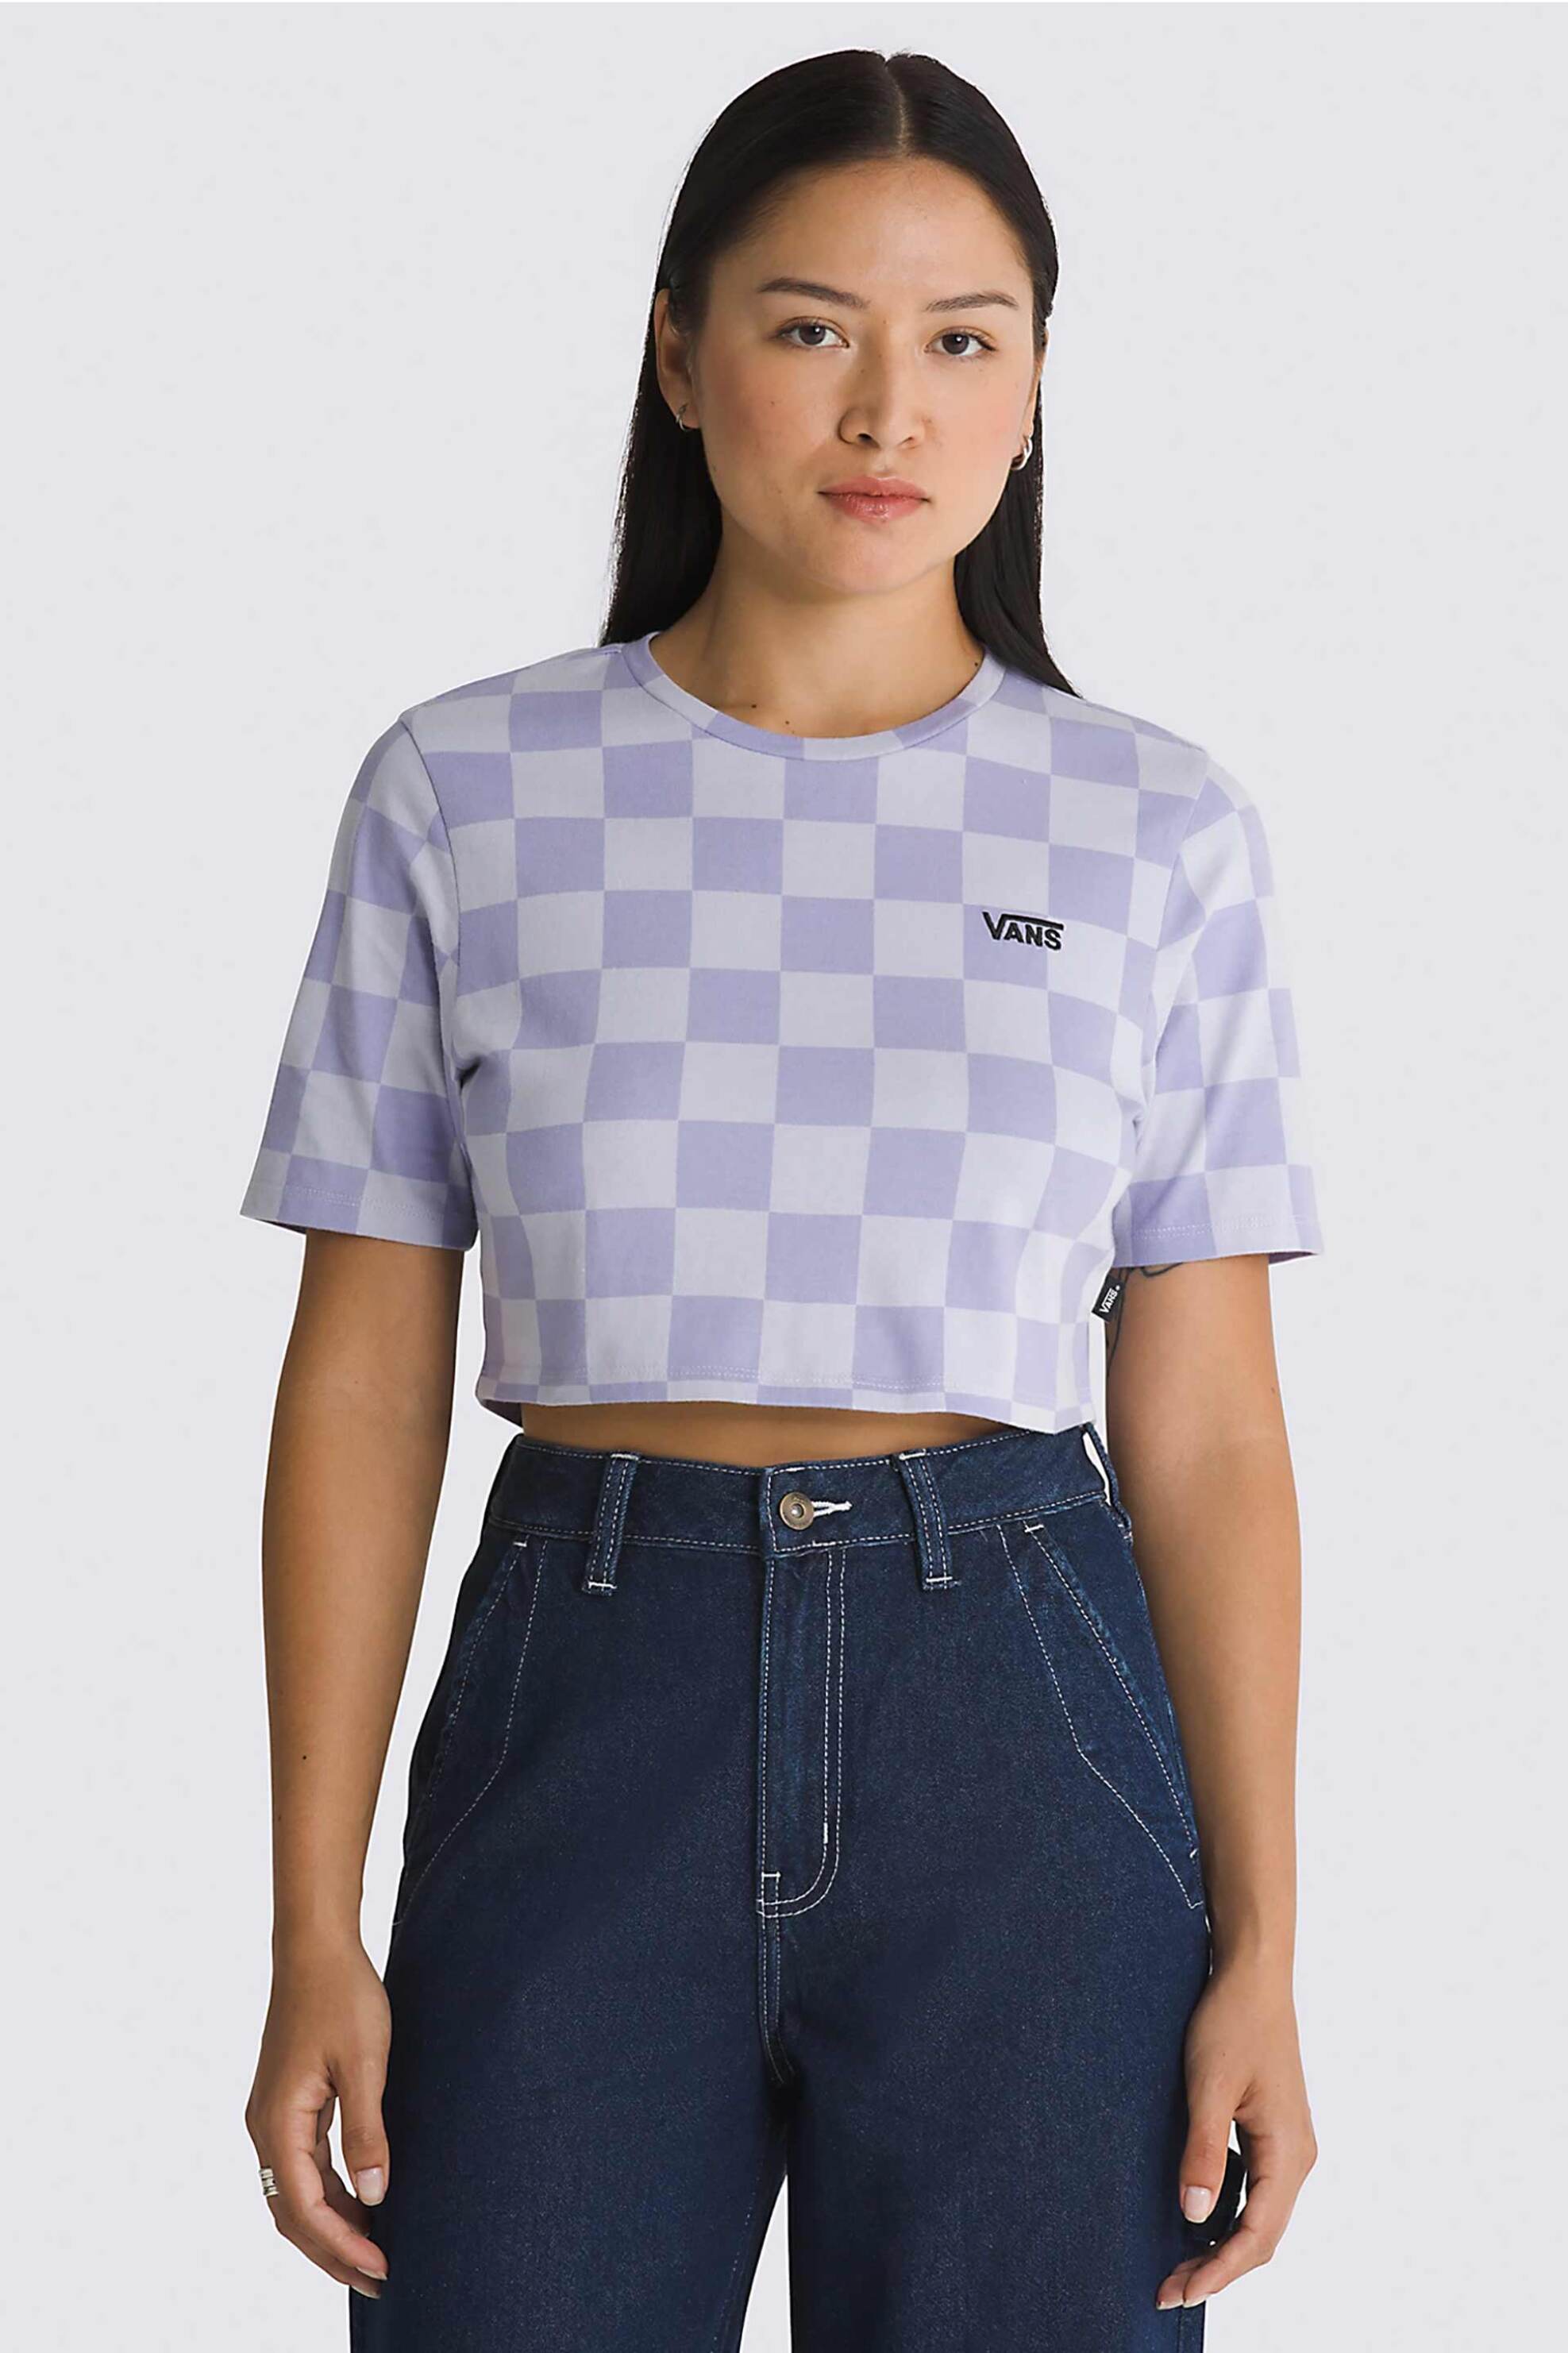 Γυναικεία Ρούχα & Αξεσουάρ > Γυναικεία Ρούχα > Γυναικεία Τοπ > Γυναικεία T-Shirts Vans γυναικείο βαμβακερό T-shirt cropped με all-over checkerboard print "Checker Crew" - VN000GB5CR21 Λιλά